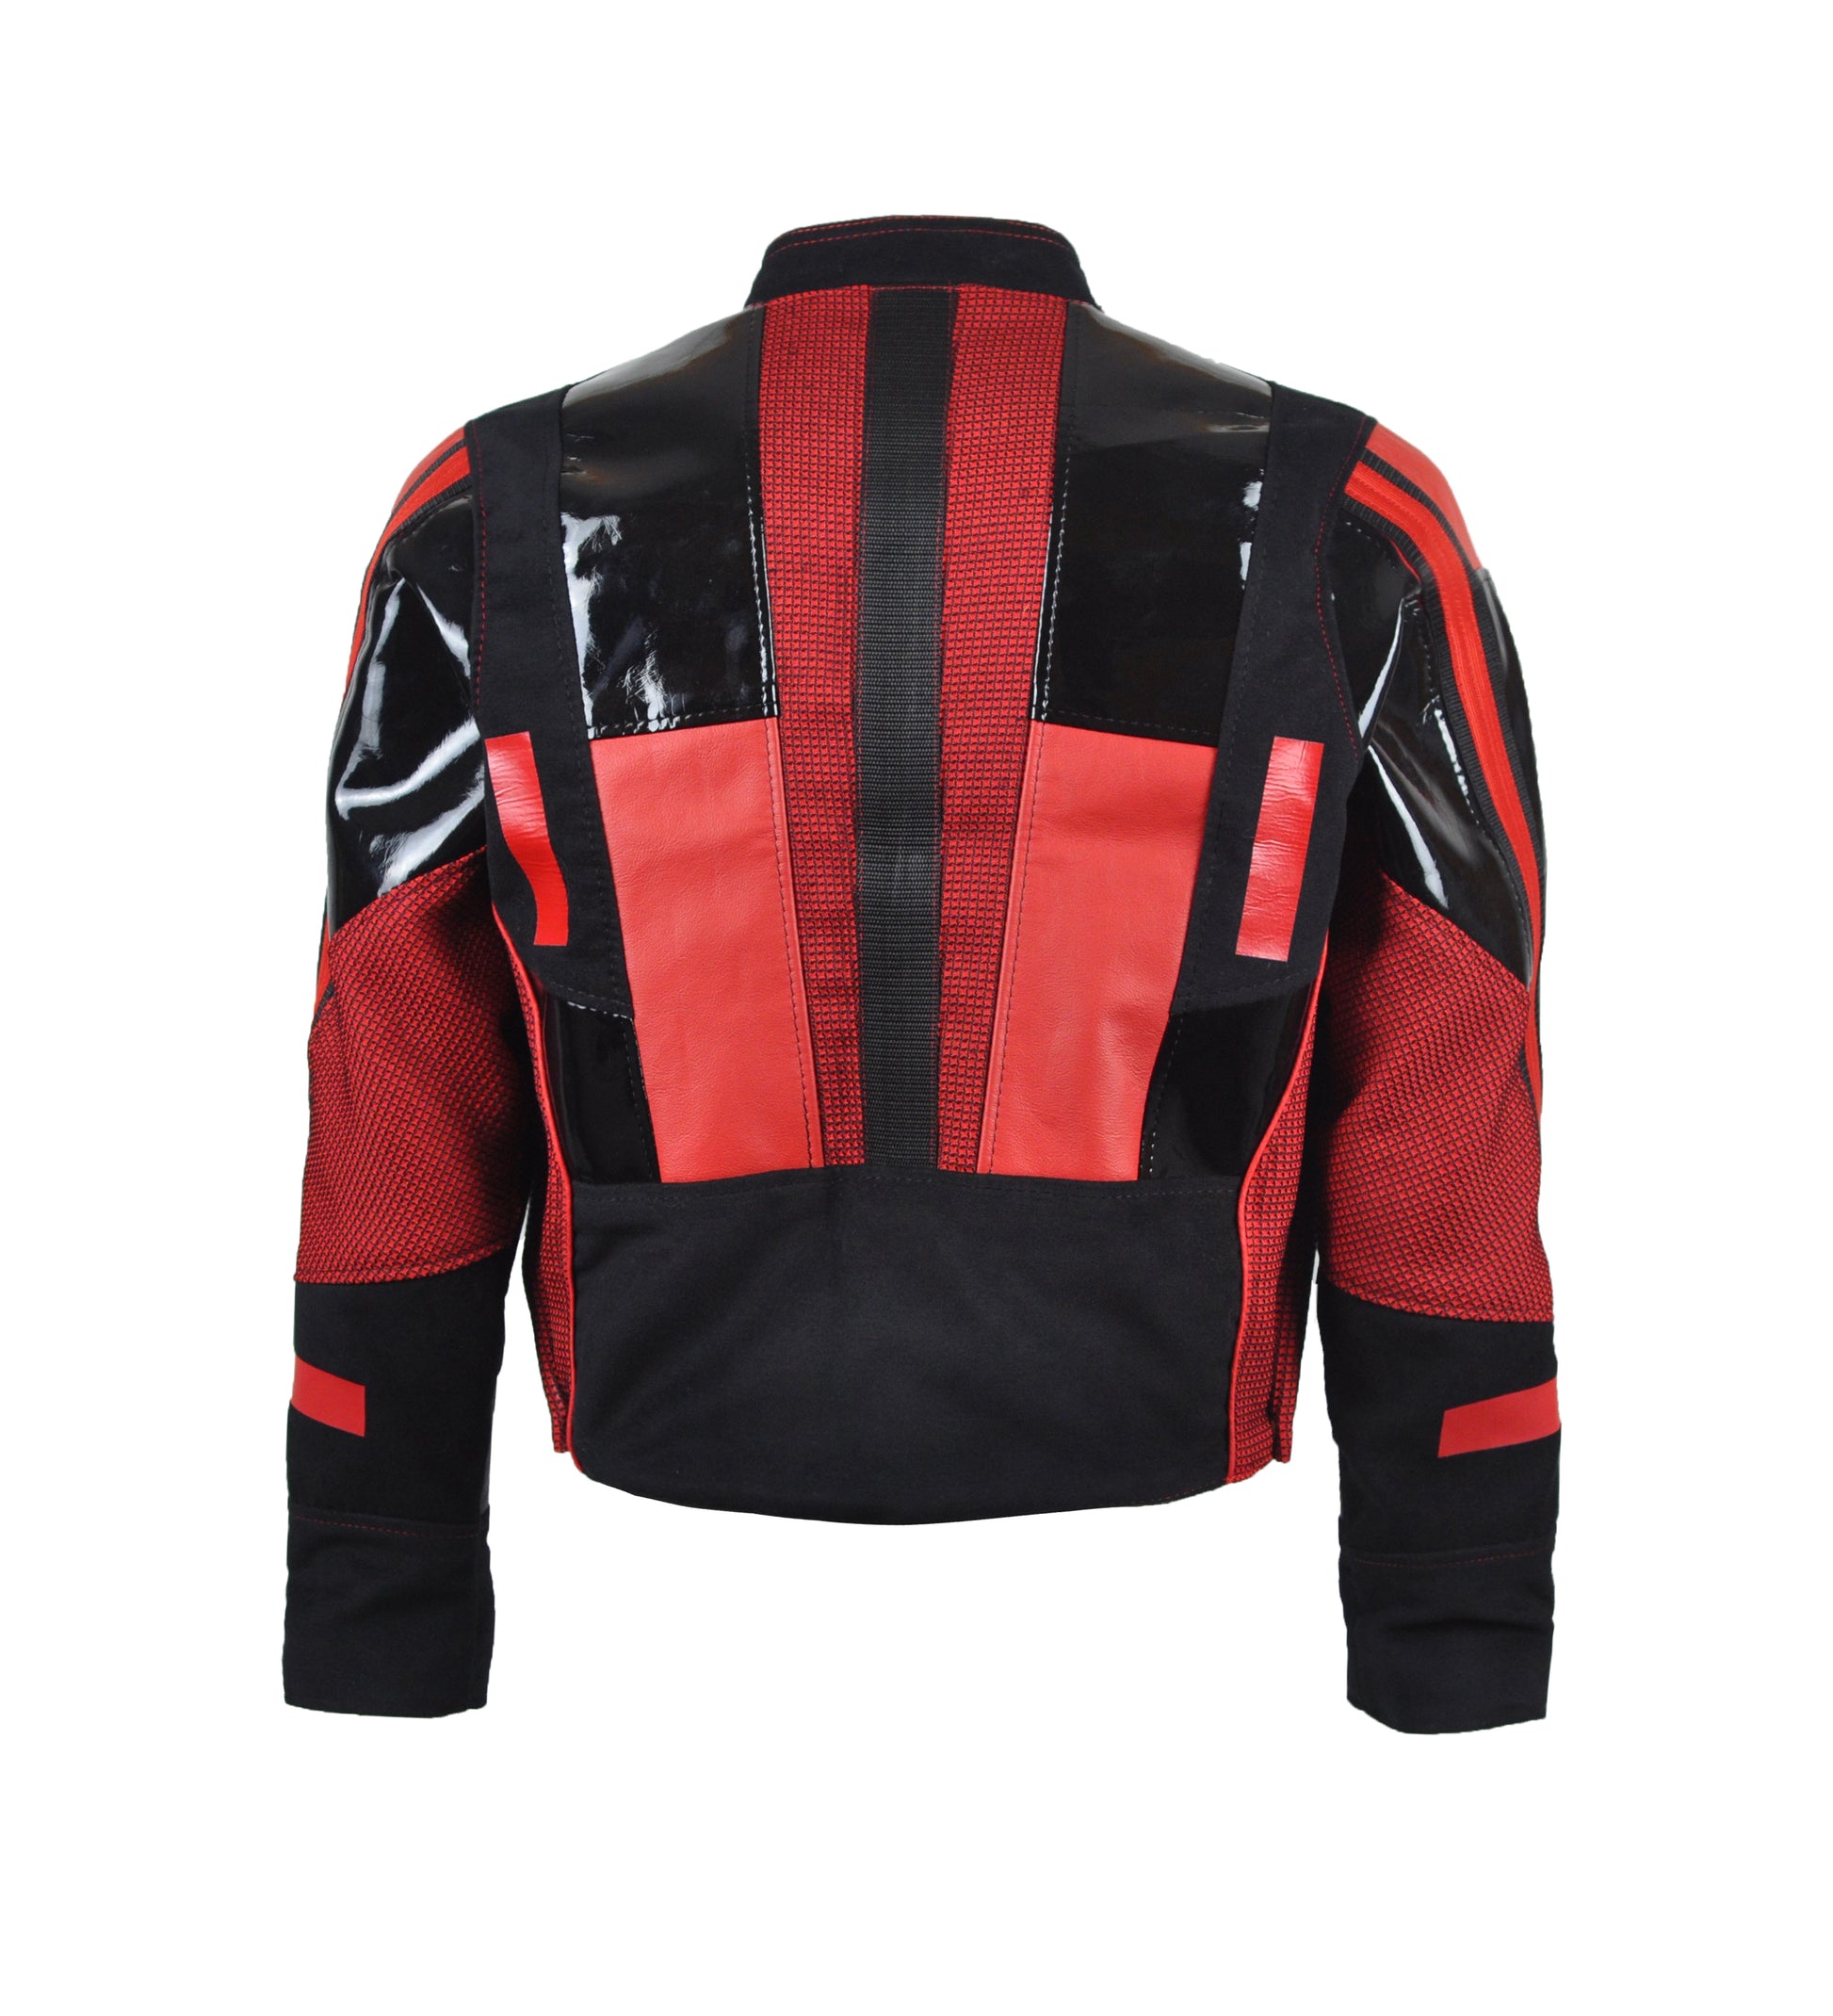 achterkant van zwart en rode jas met lak stukken, techno outfit